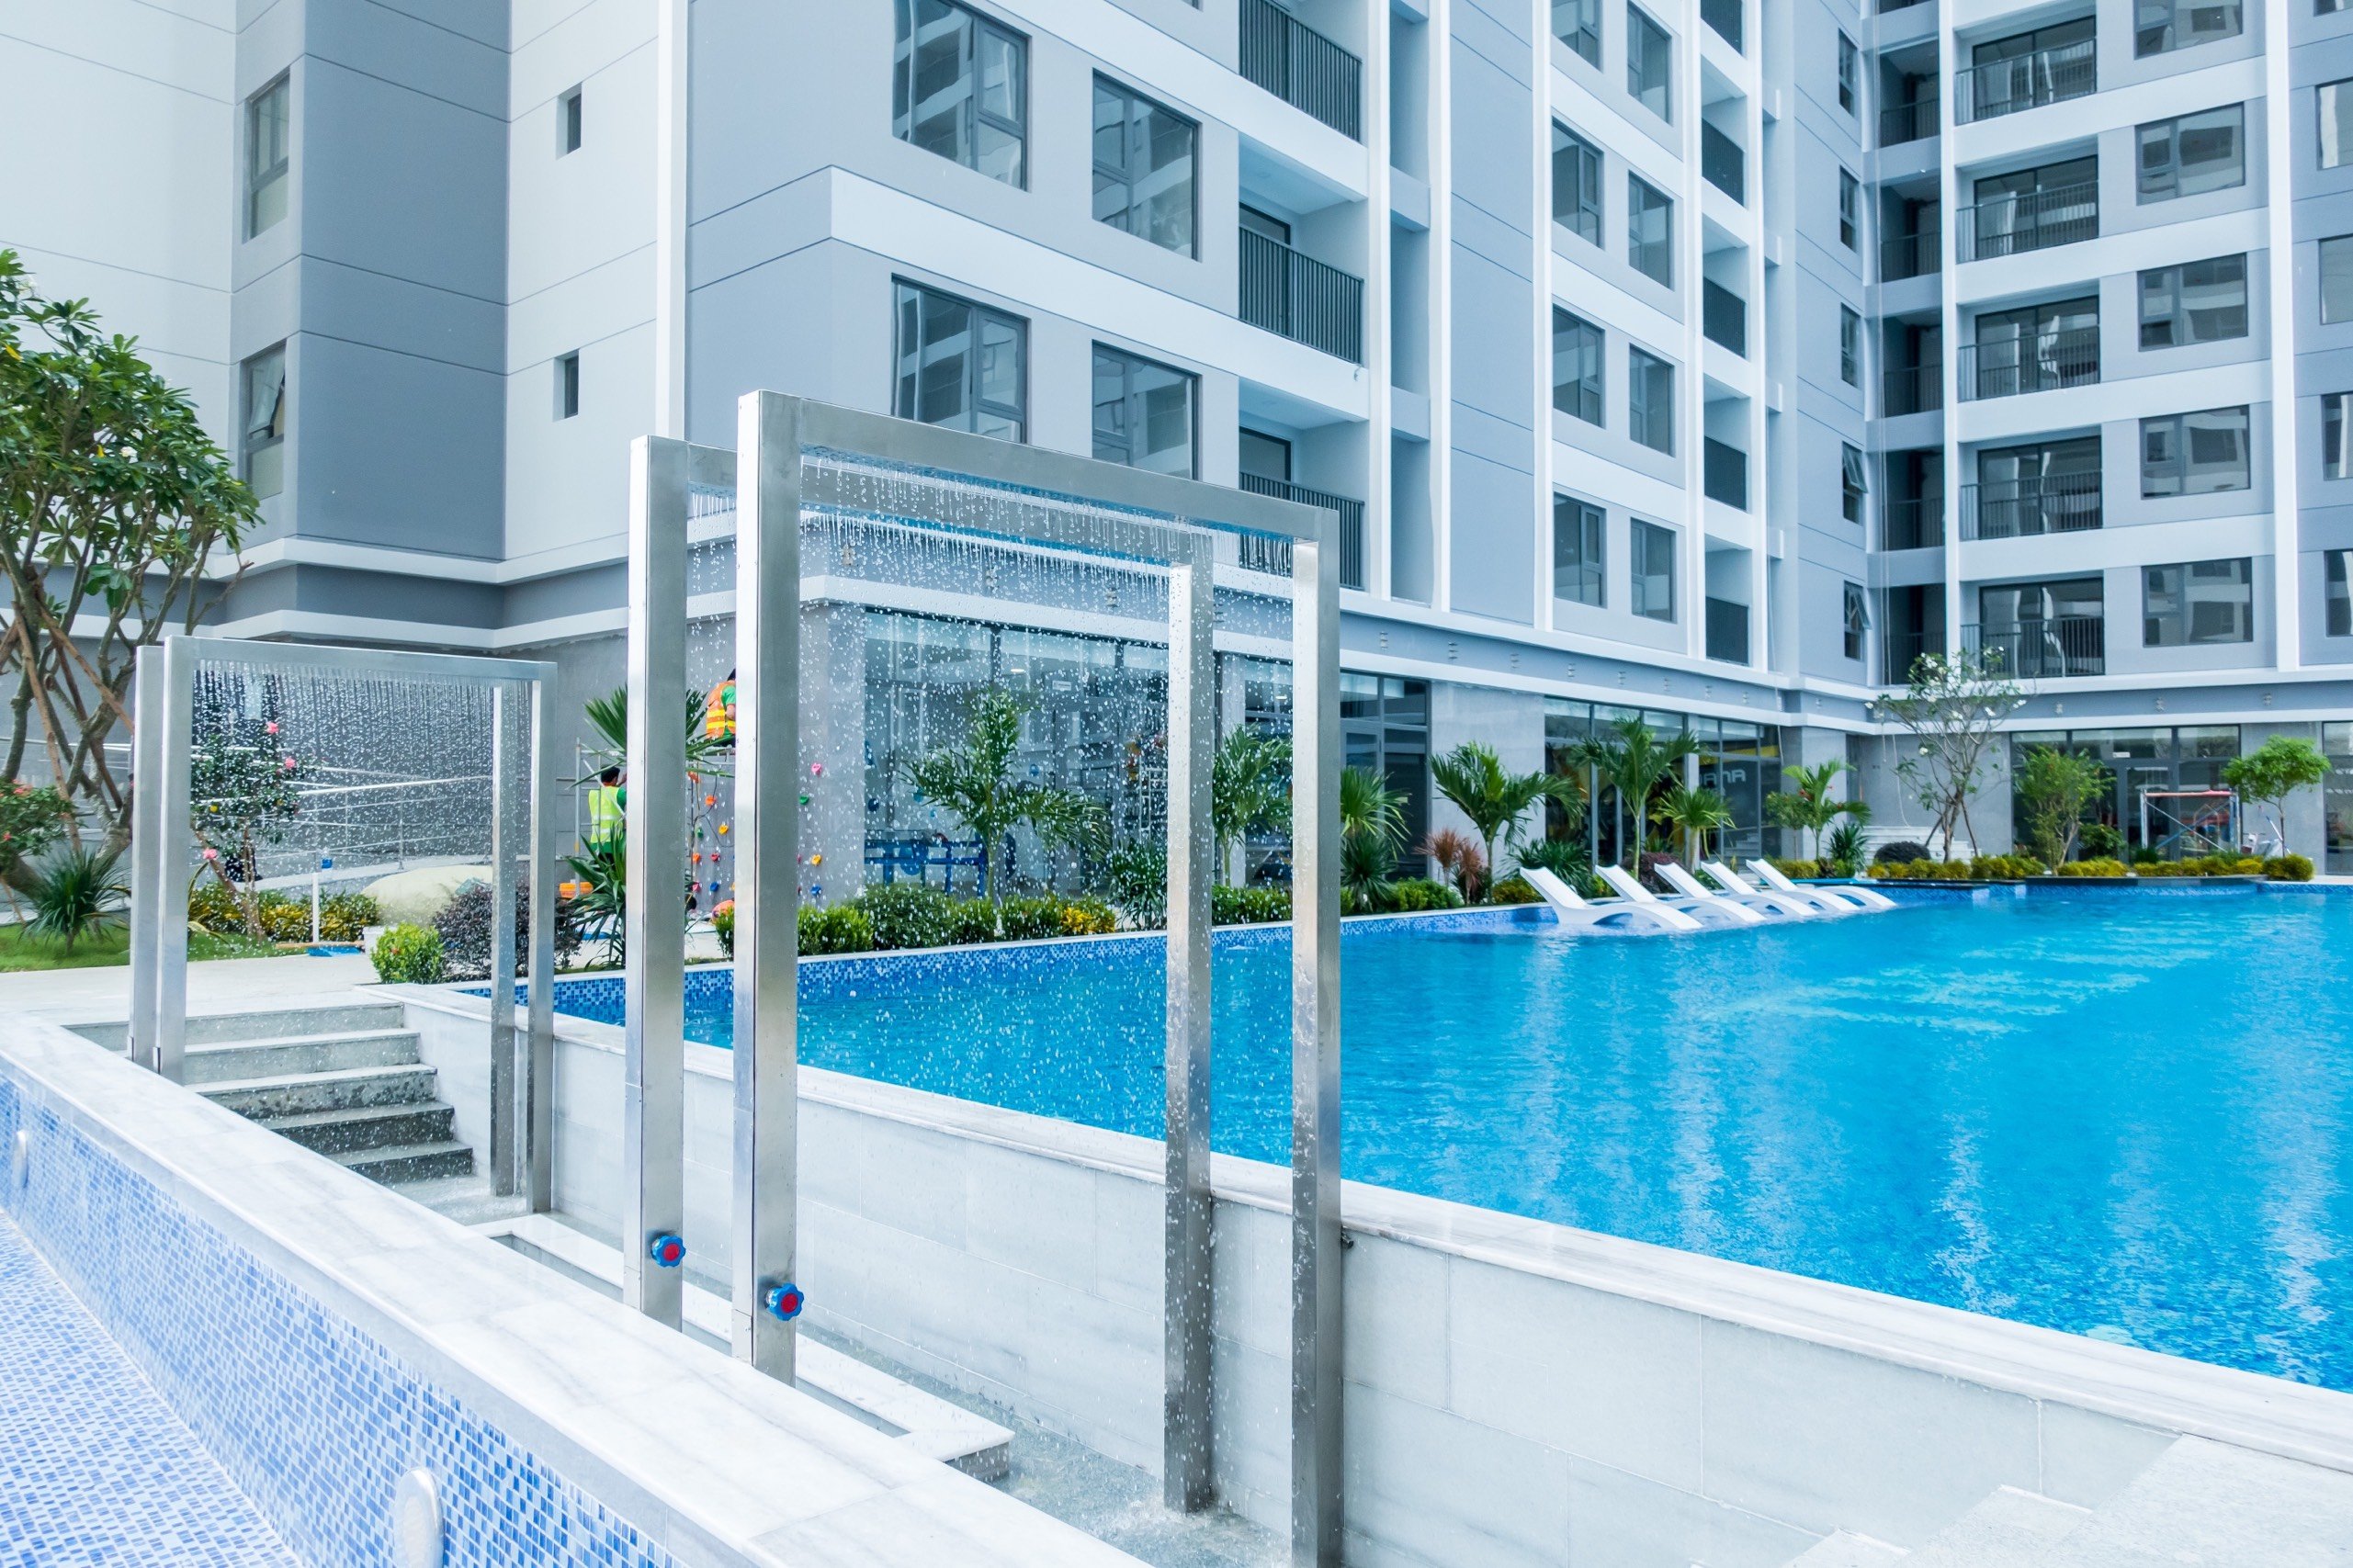 Cho thuê căn hộ Rivana 1PN view sông Sài Gòn & hồ bơi giá chỉ 5,5tr/tháng - LH 0909 806 652 4